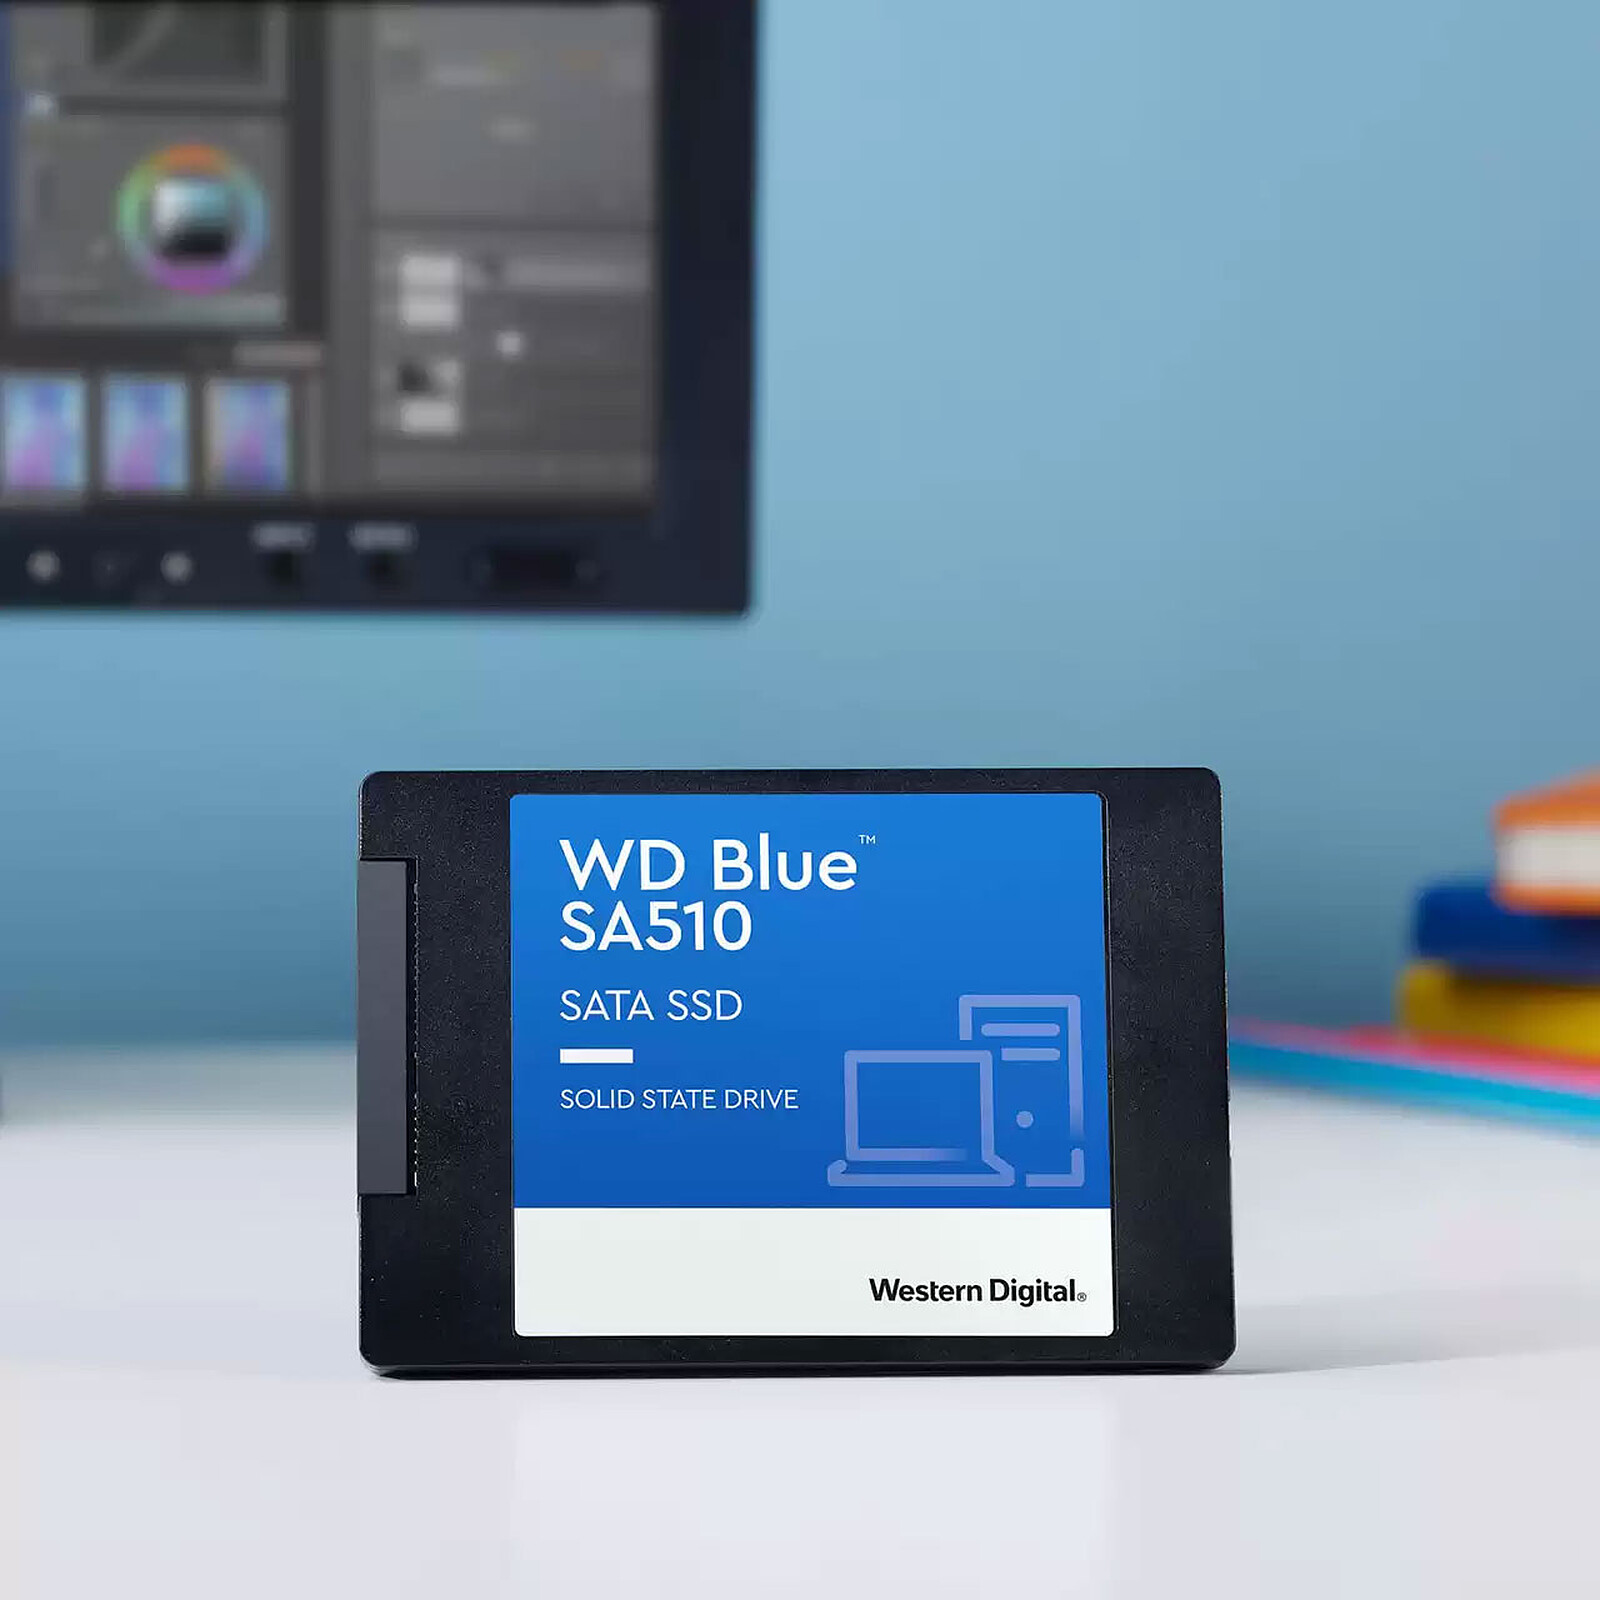 DISQUE DUR SSD WD BLUE SATA